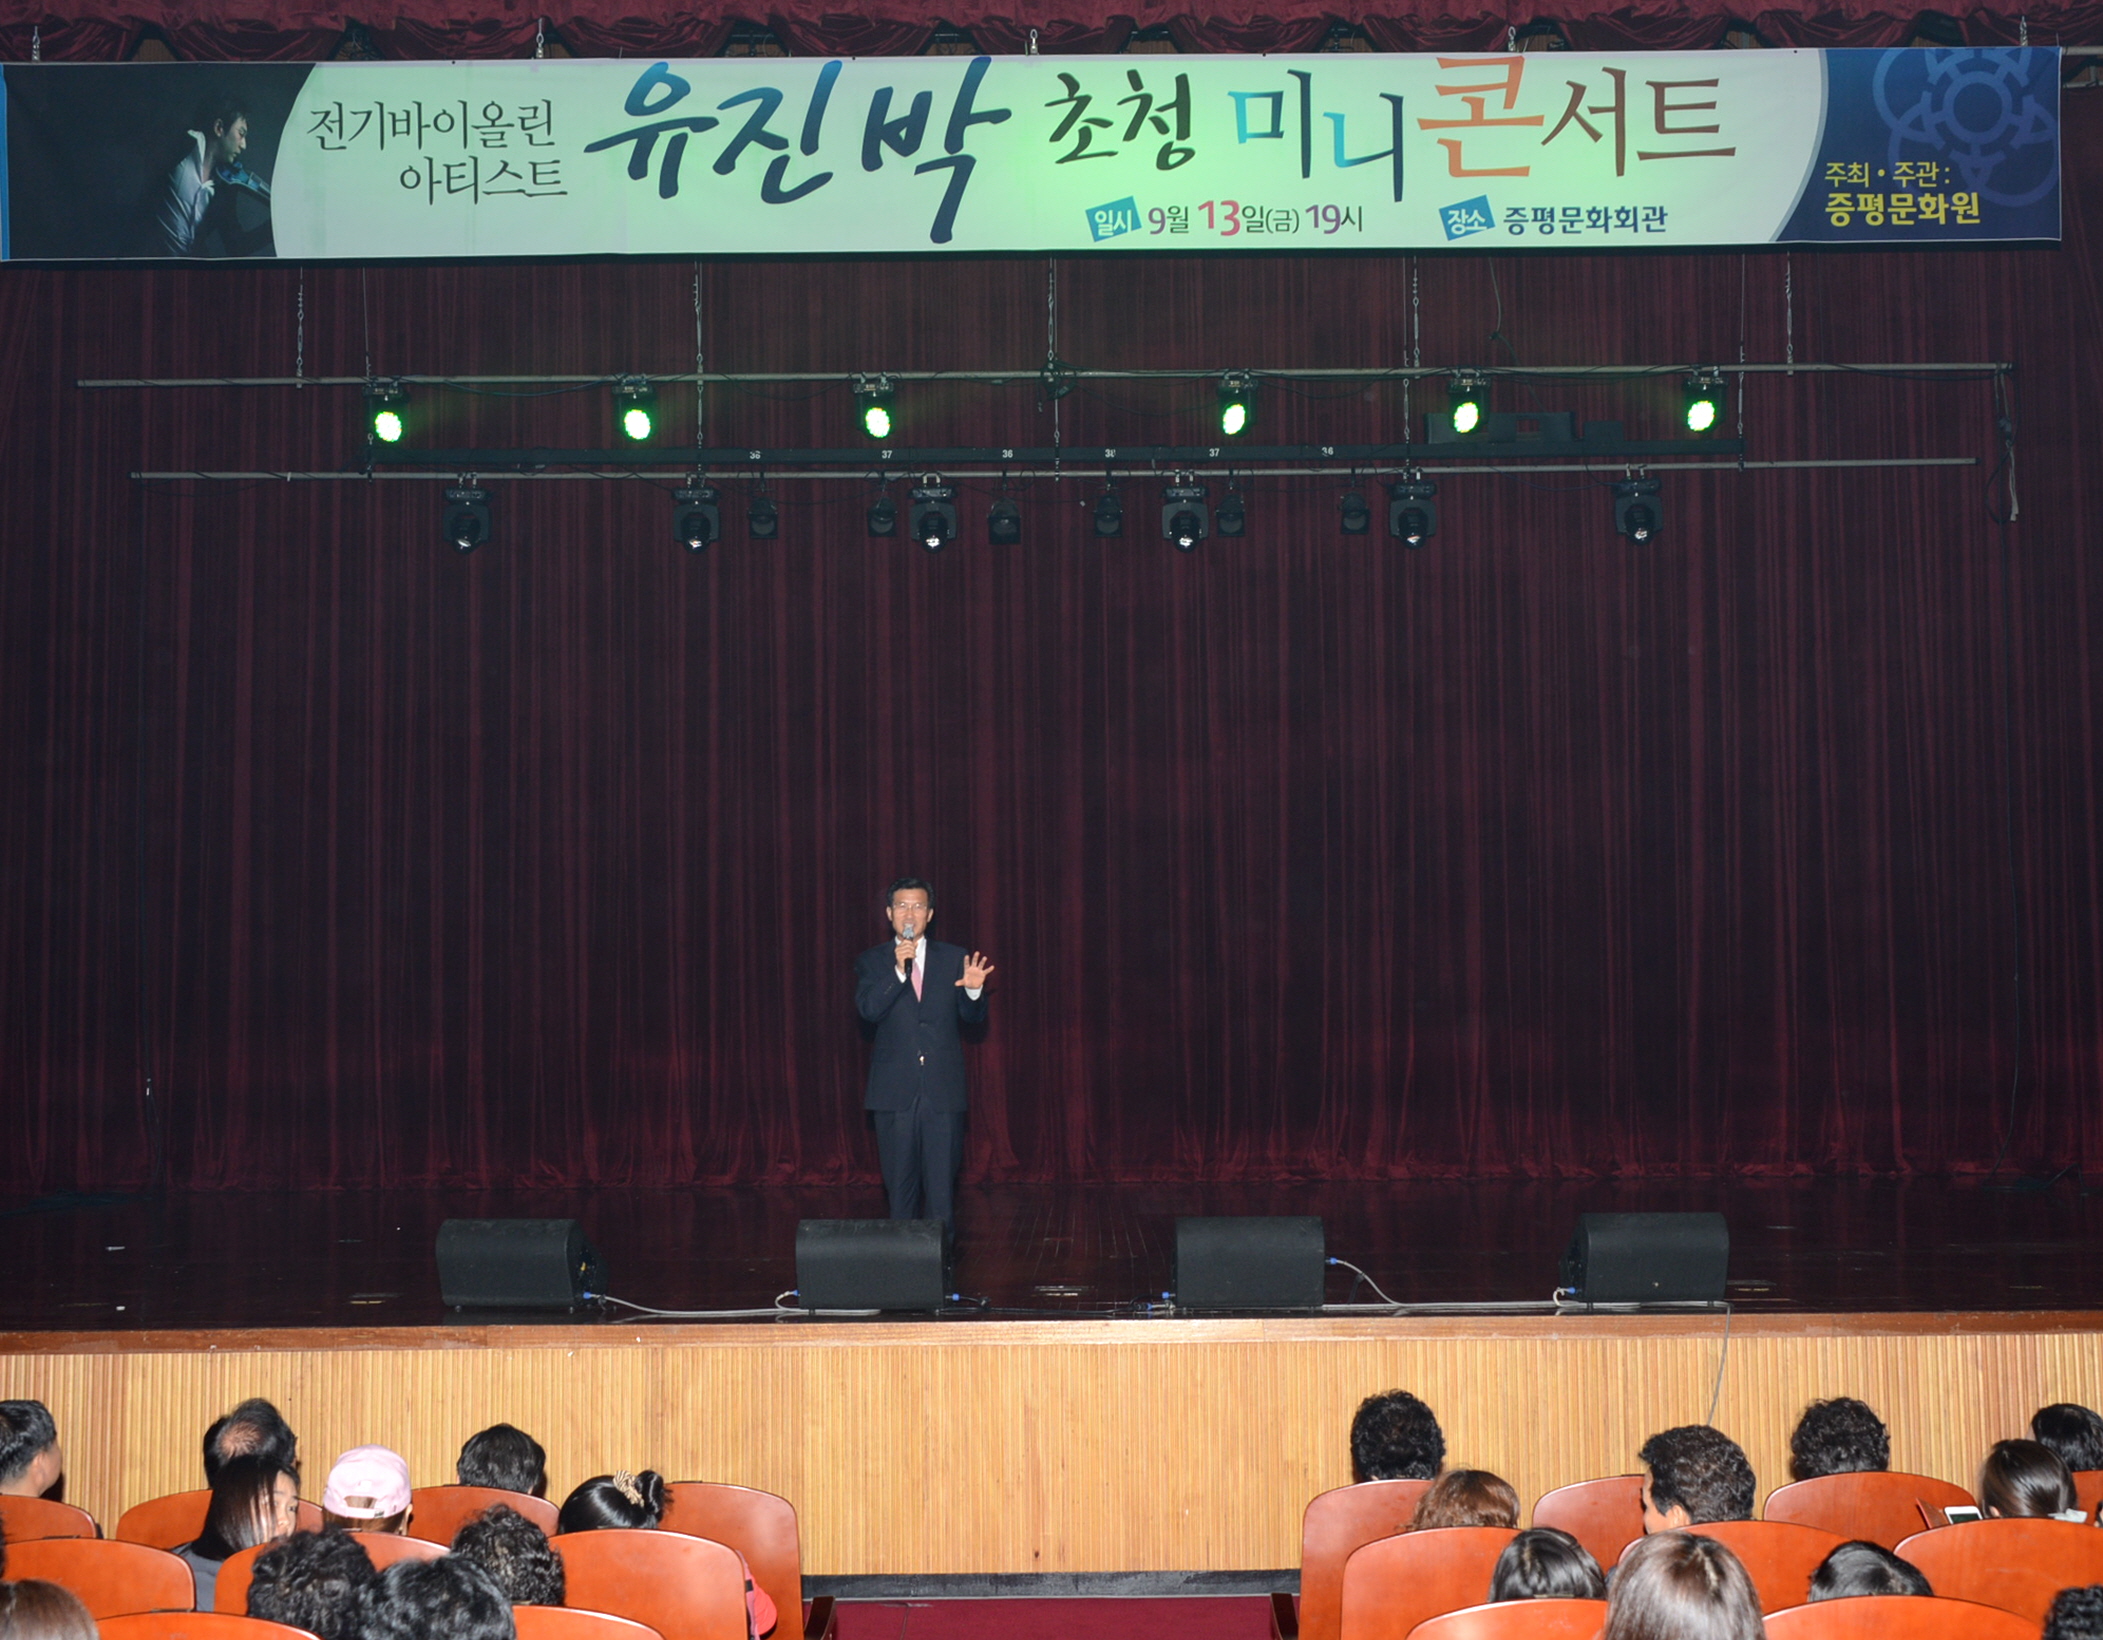 유진박 미니콘서트 참석